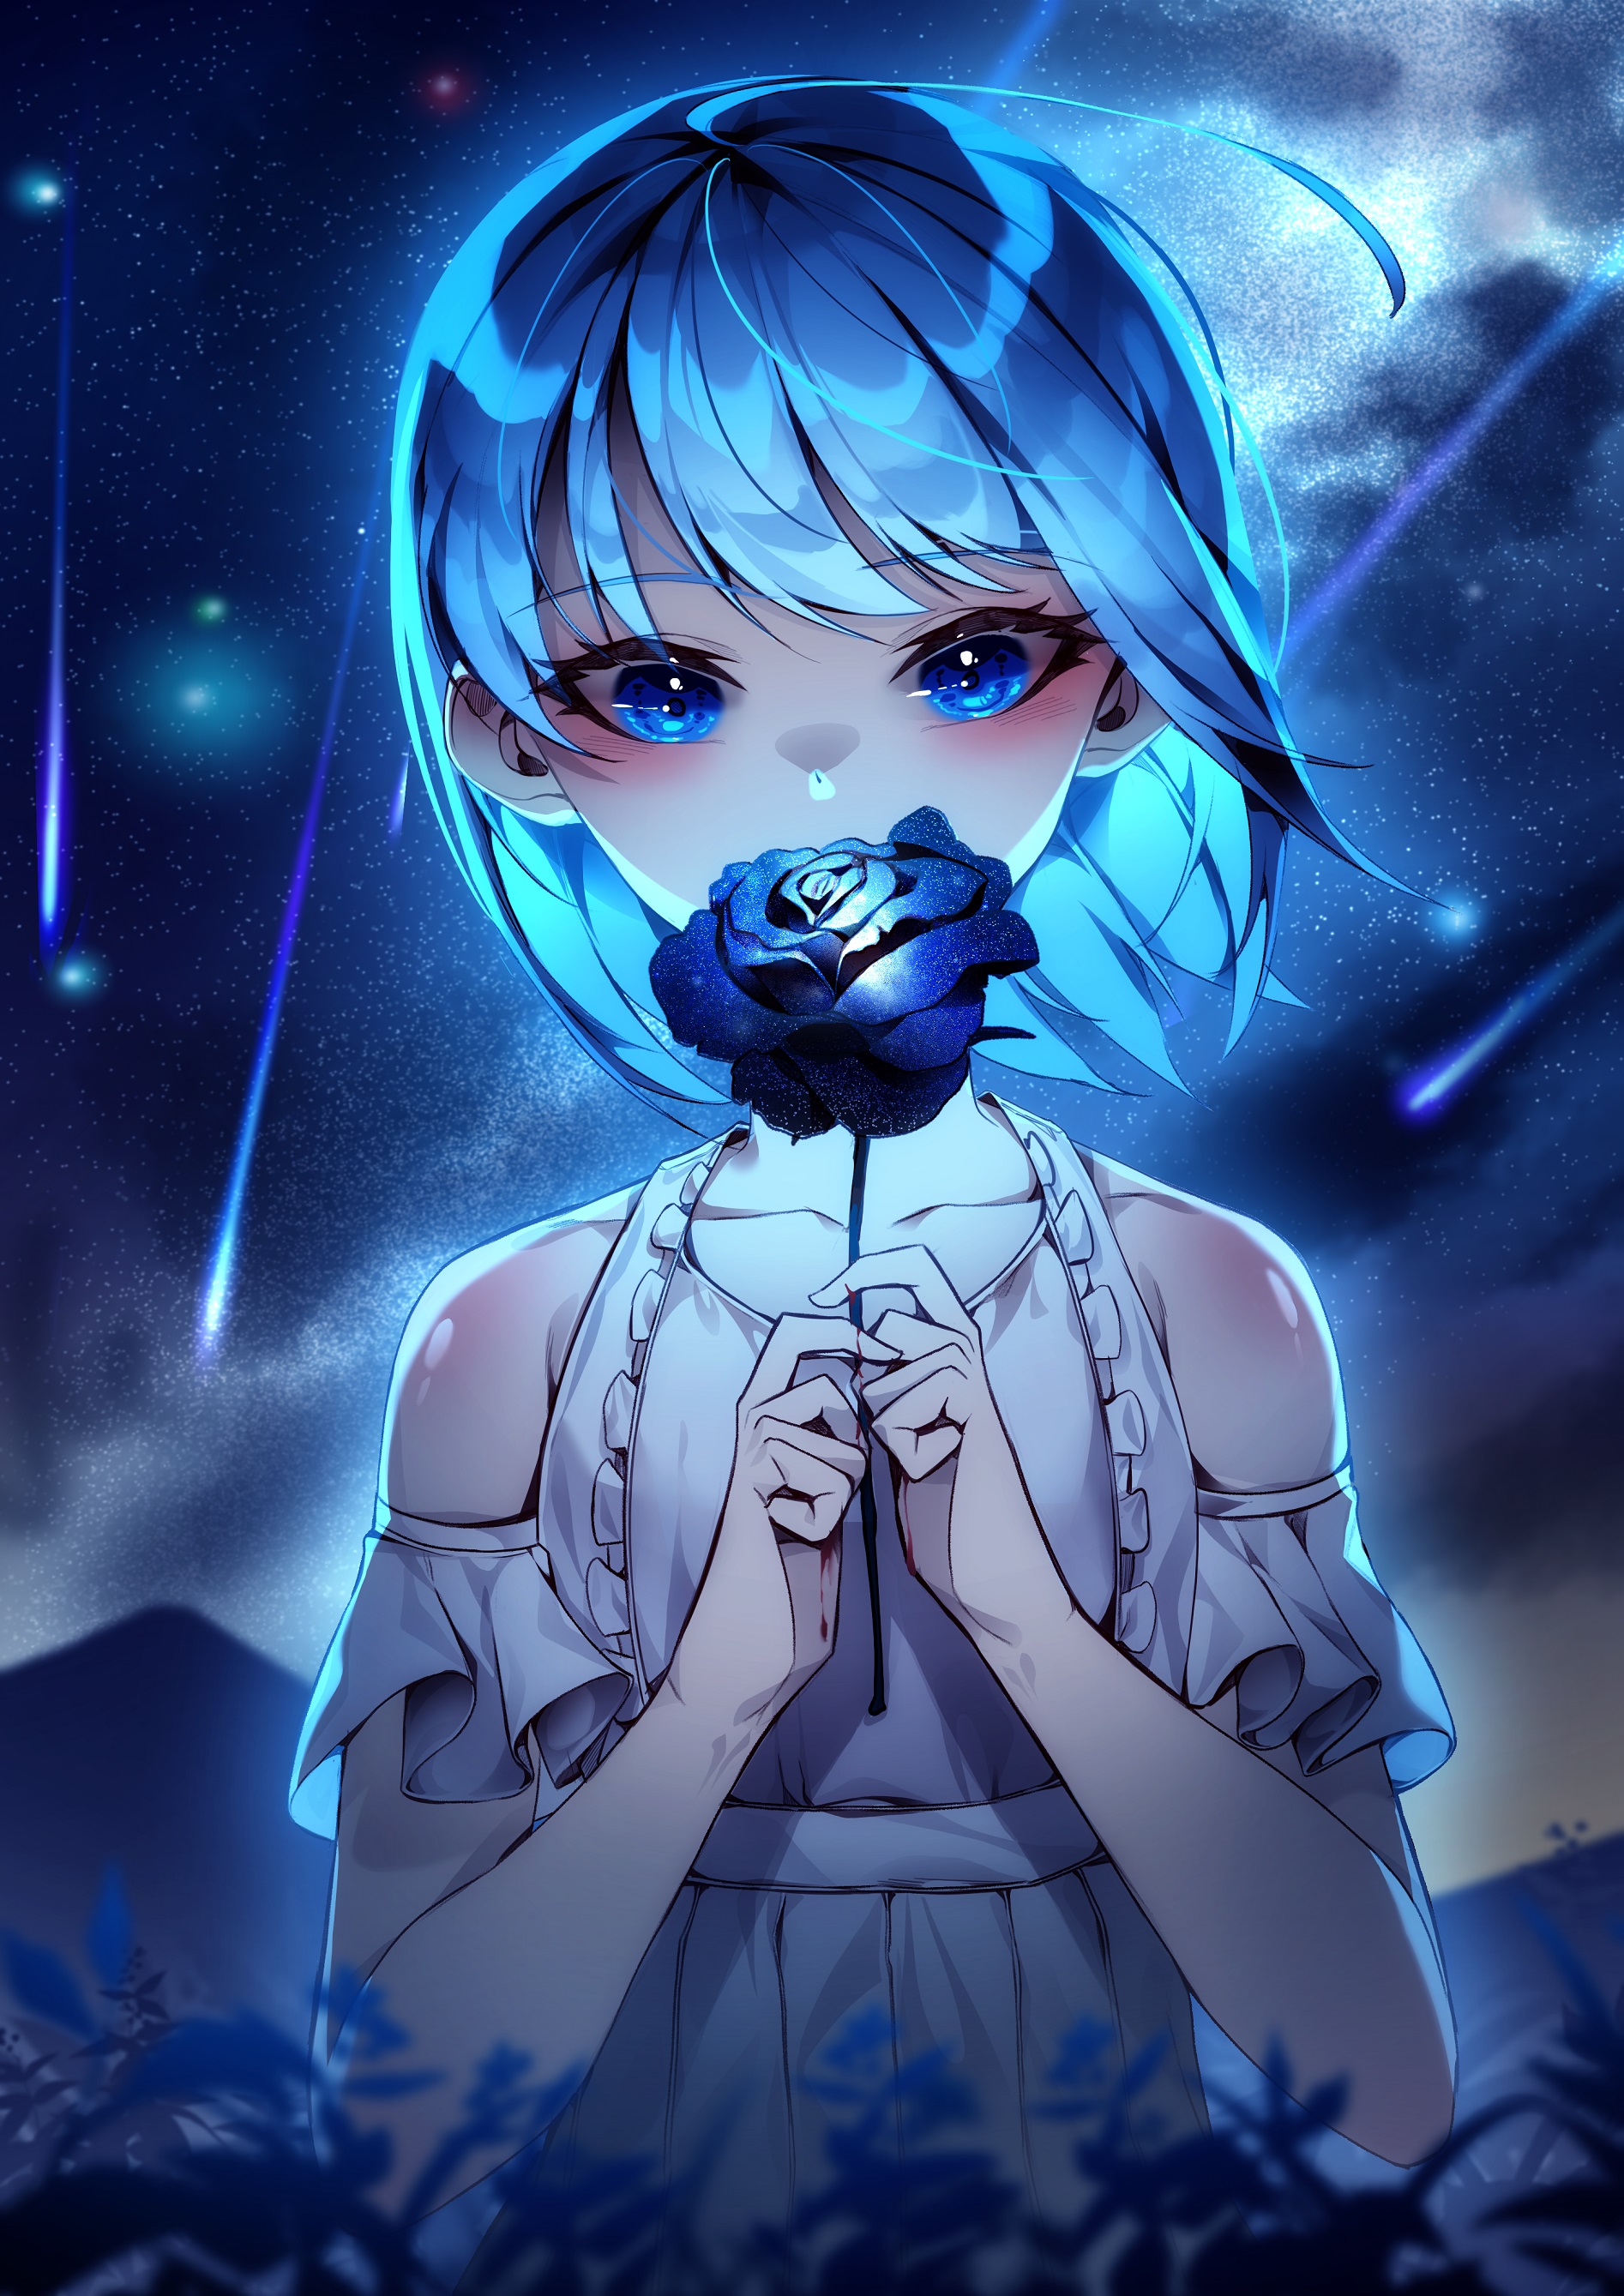 Фото Девочка с голубой розой в руках стоит на фоне ночного неба, автор hiya / lww3257